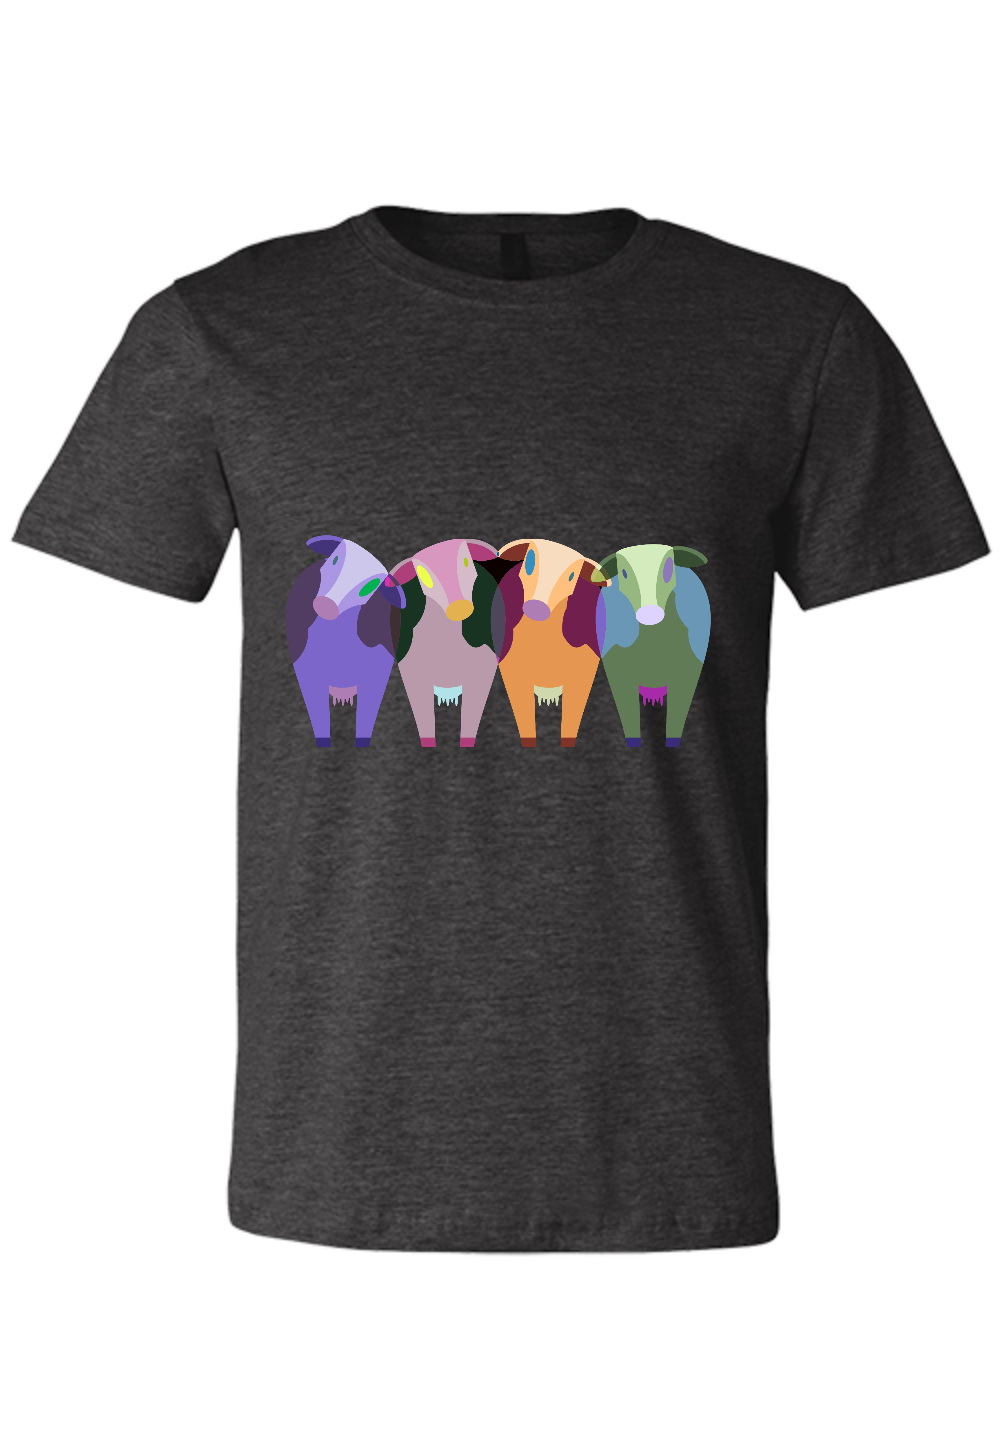 cows on a dark t-shirt